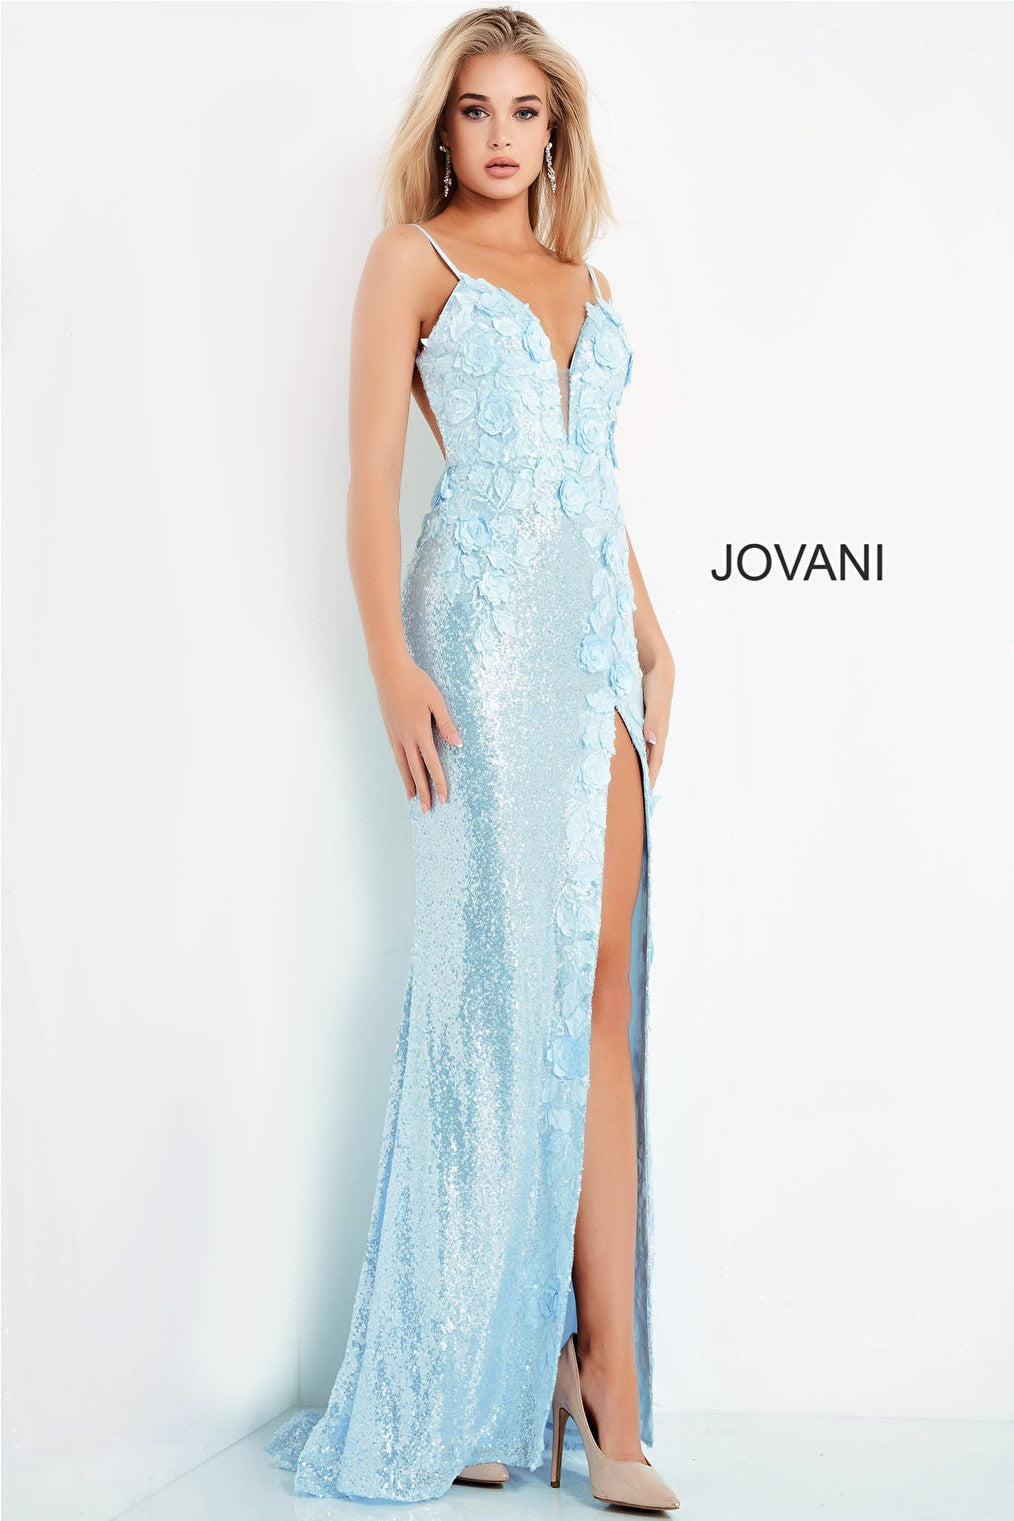 Jovani 1012 high slit prom dress